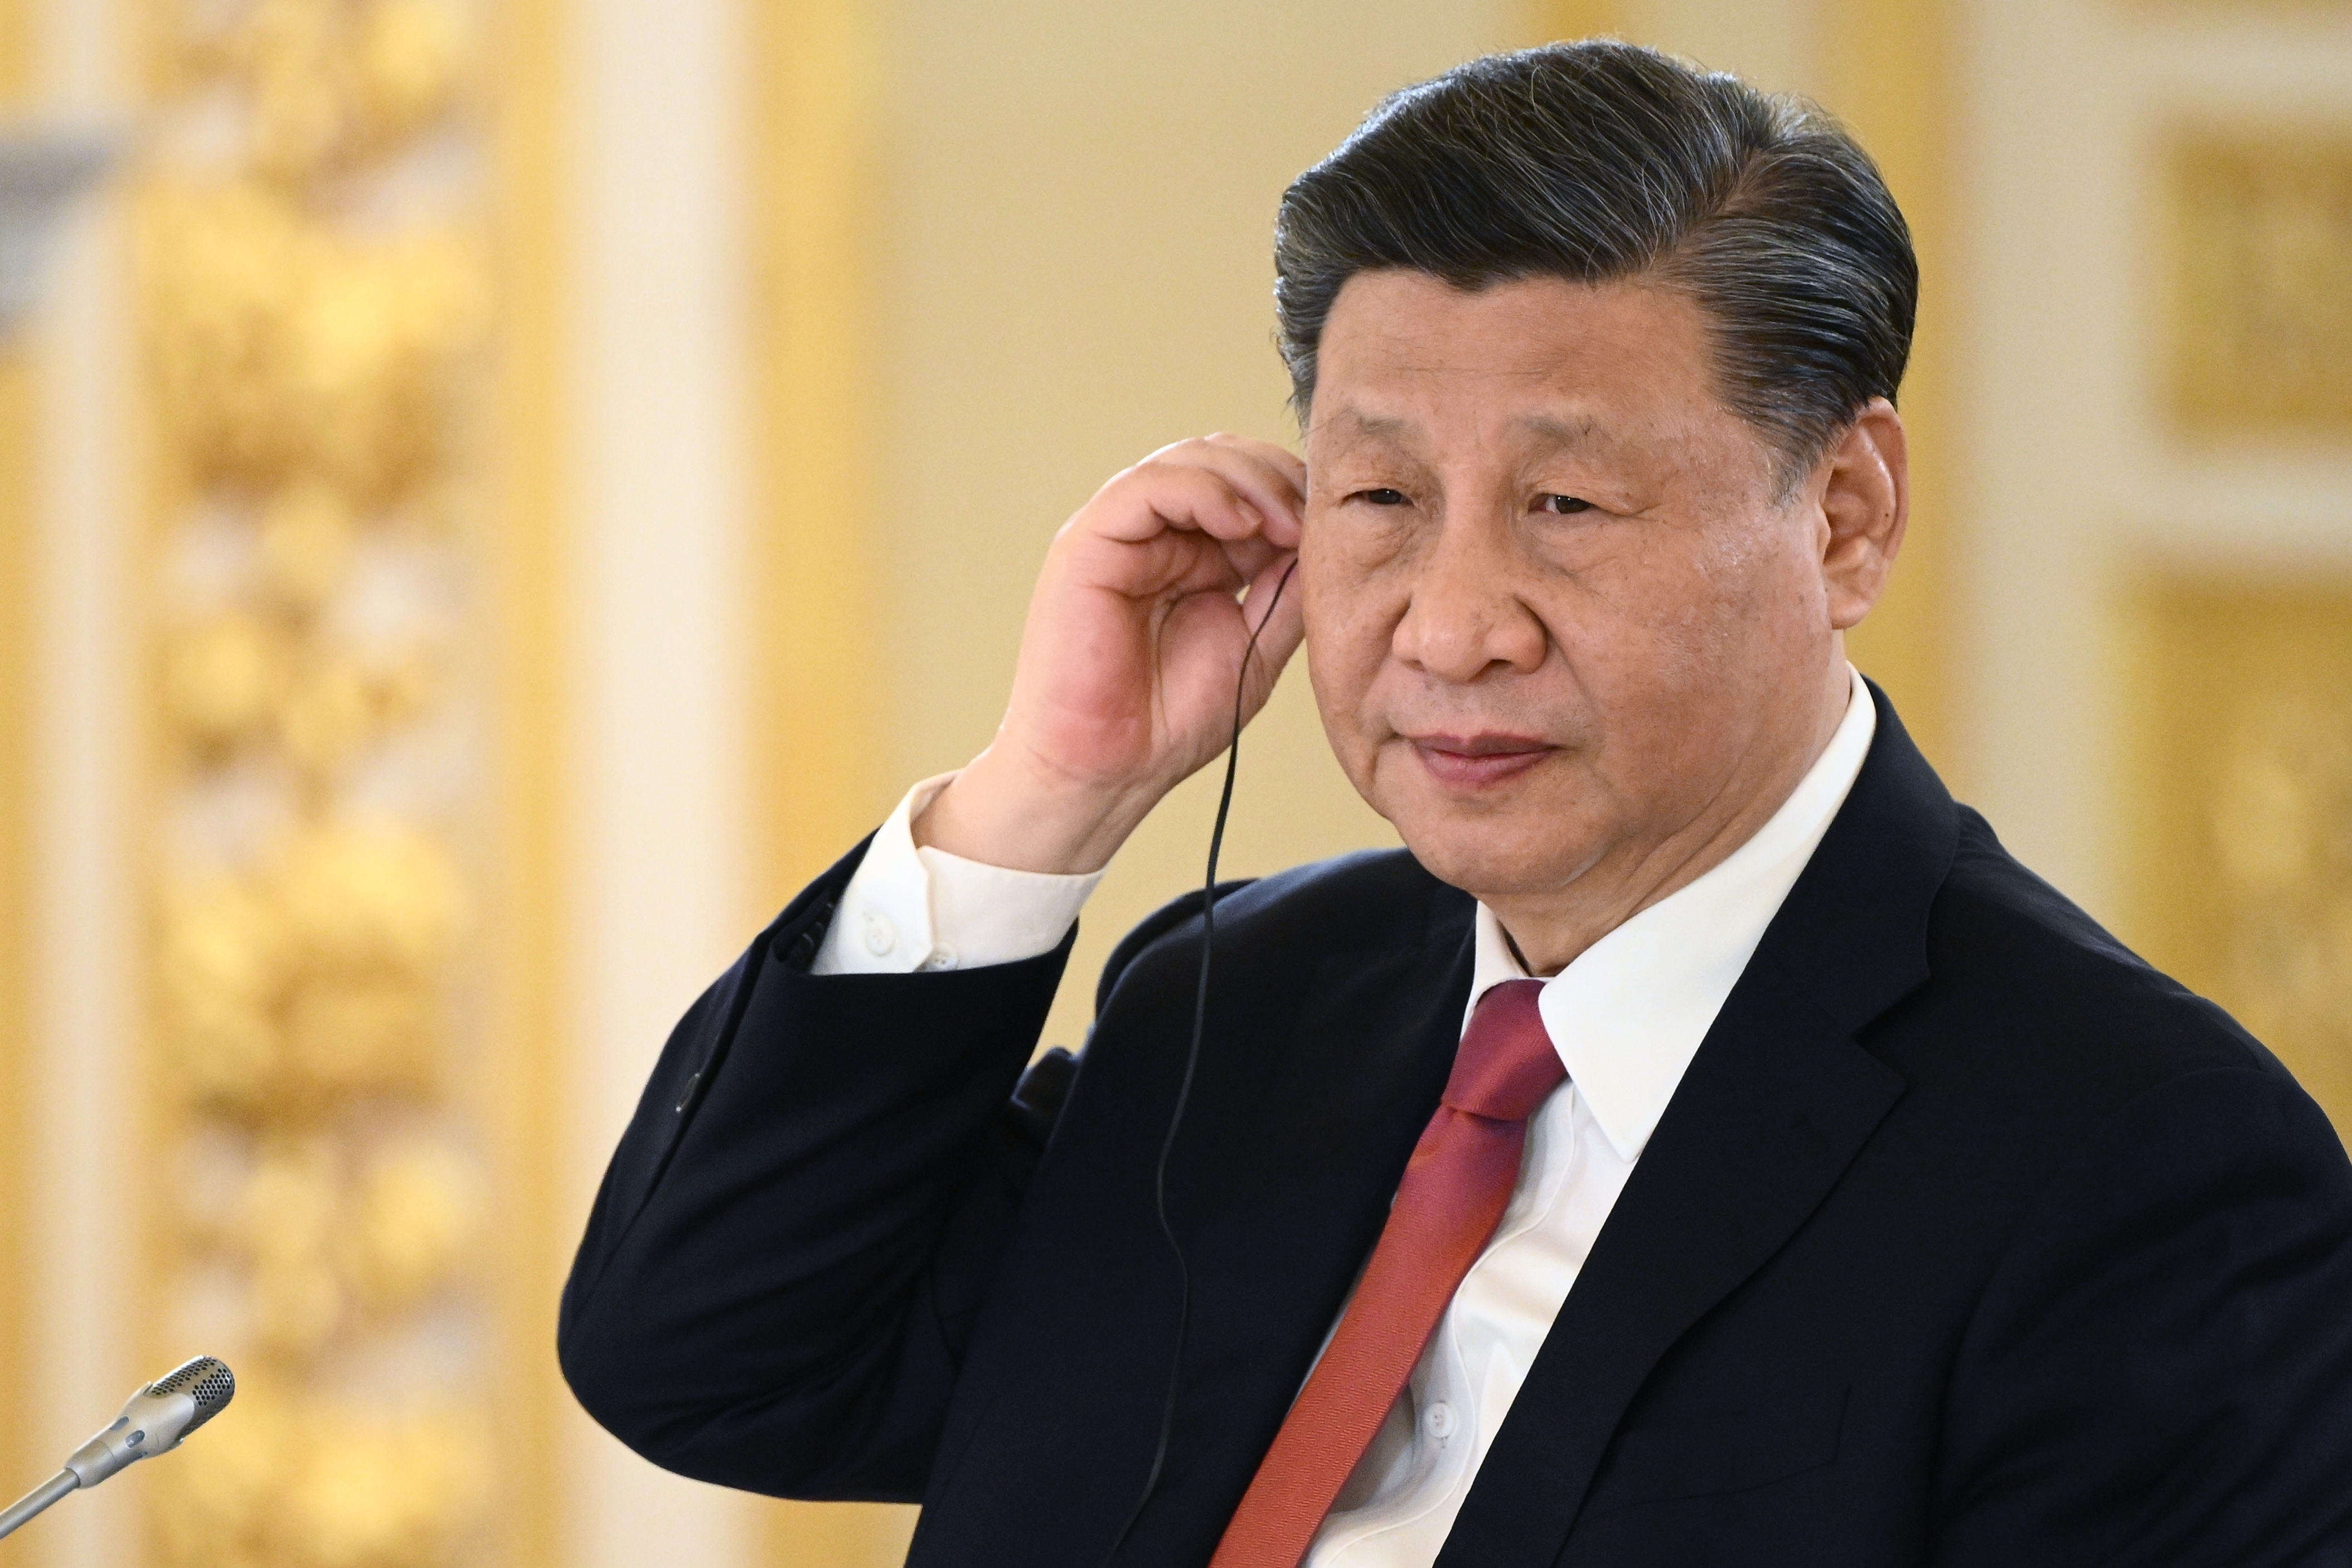 O nouă lovitură pentru economia Chinei: Activitatea fabricilor încetineşte iar, un semnal de alarmă pentru preşedintele Xi Jinping, care se pregăteşte pentru cel mai mare eveniment politic al anului, unde cel mai probabil va anunţa noi măsuri agresive de stimulare economică 